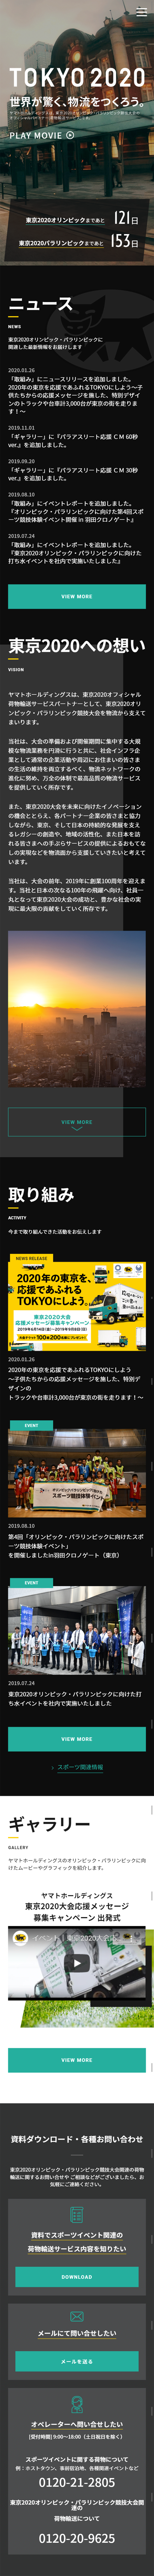 東京2020オリンピック・パラリンピック 荷物輸送サービスパートナー_sp_1